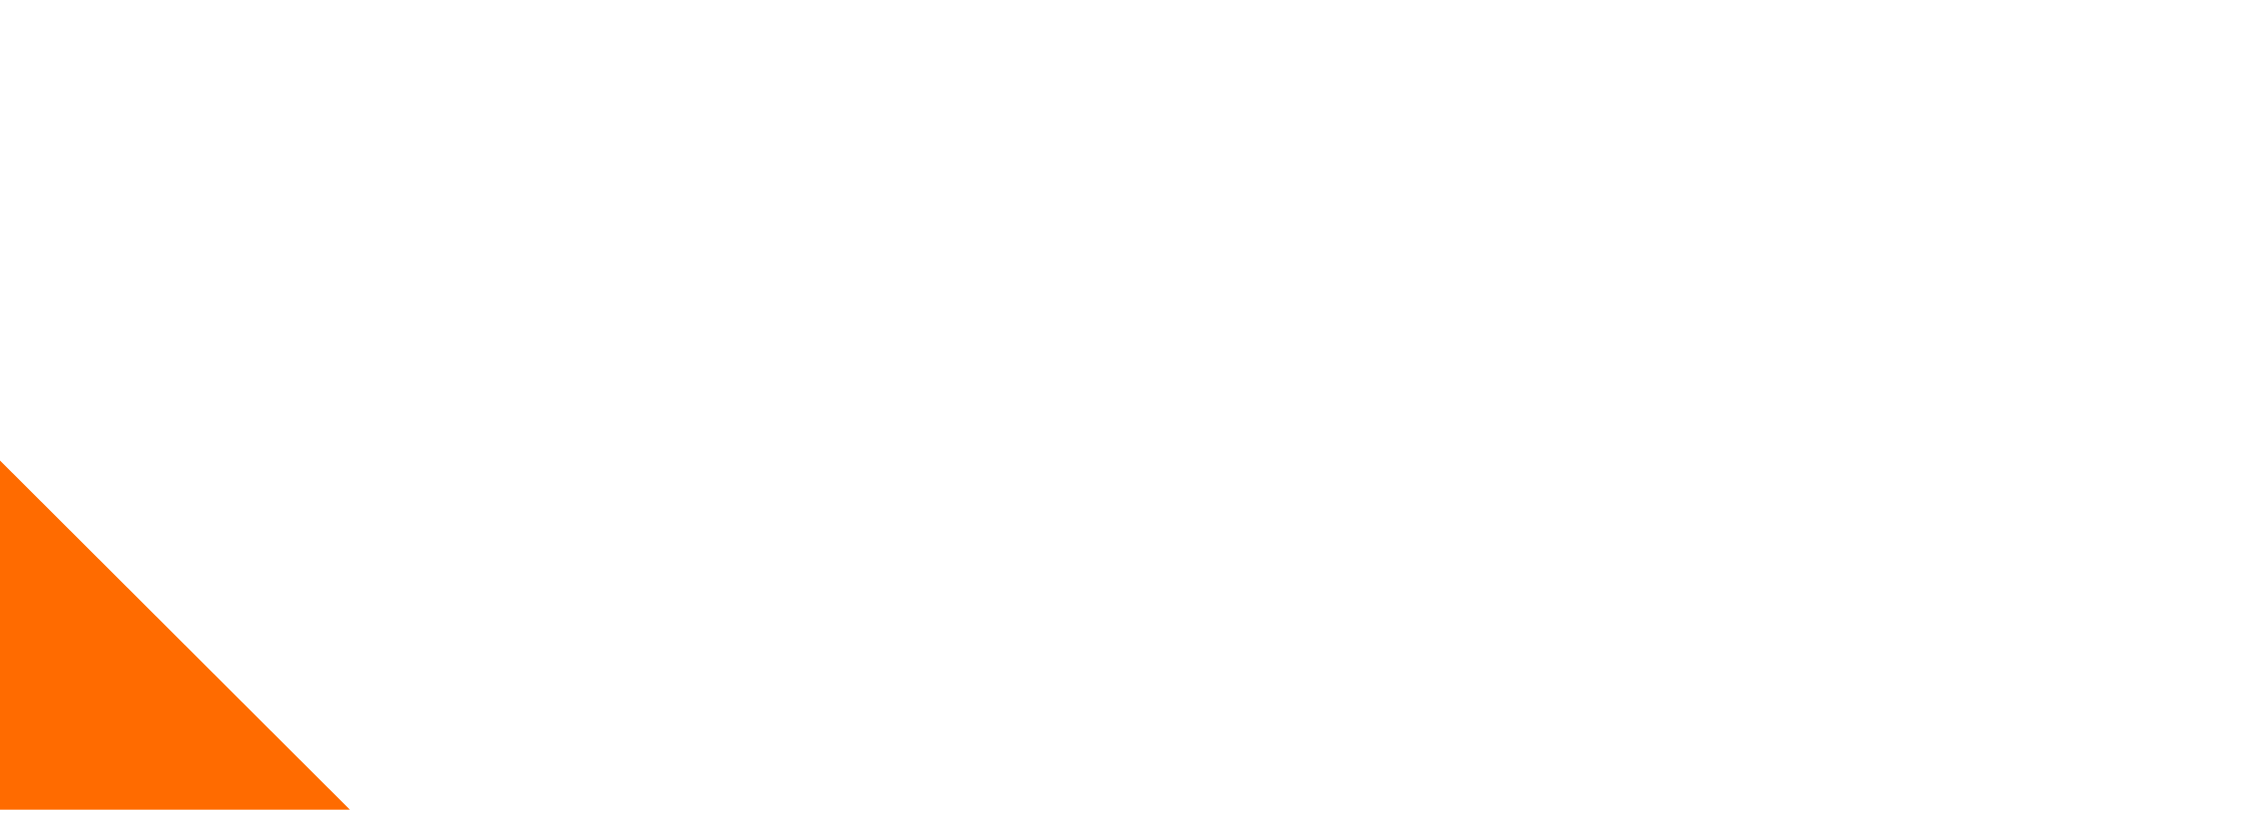 D3O Logo